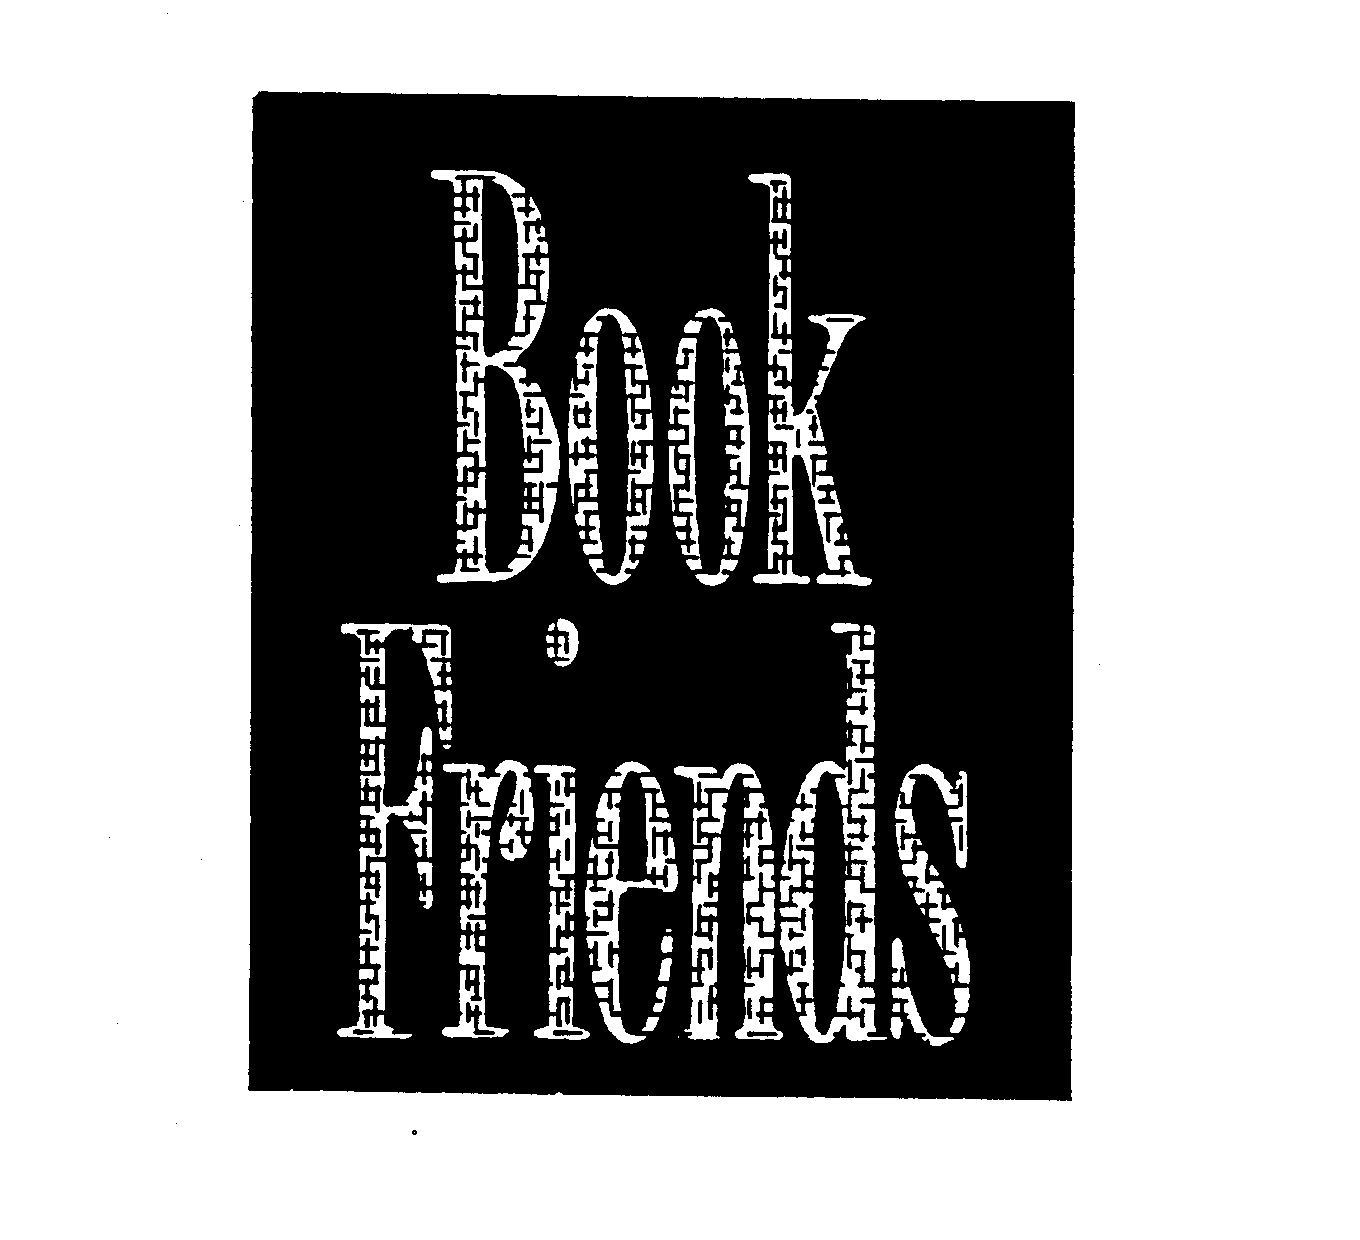  BOOK FRIENDS